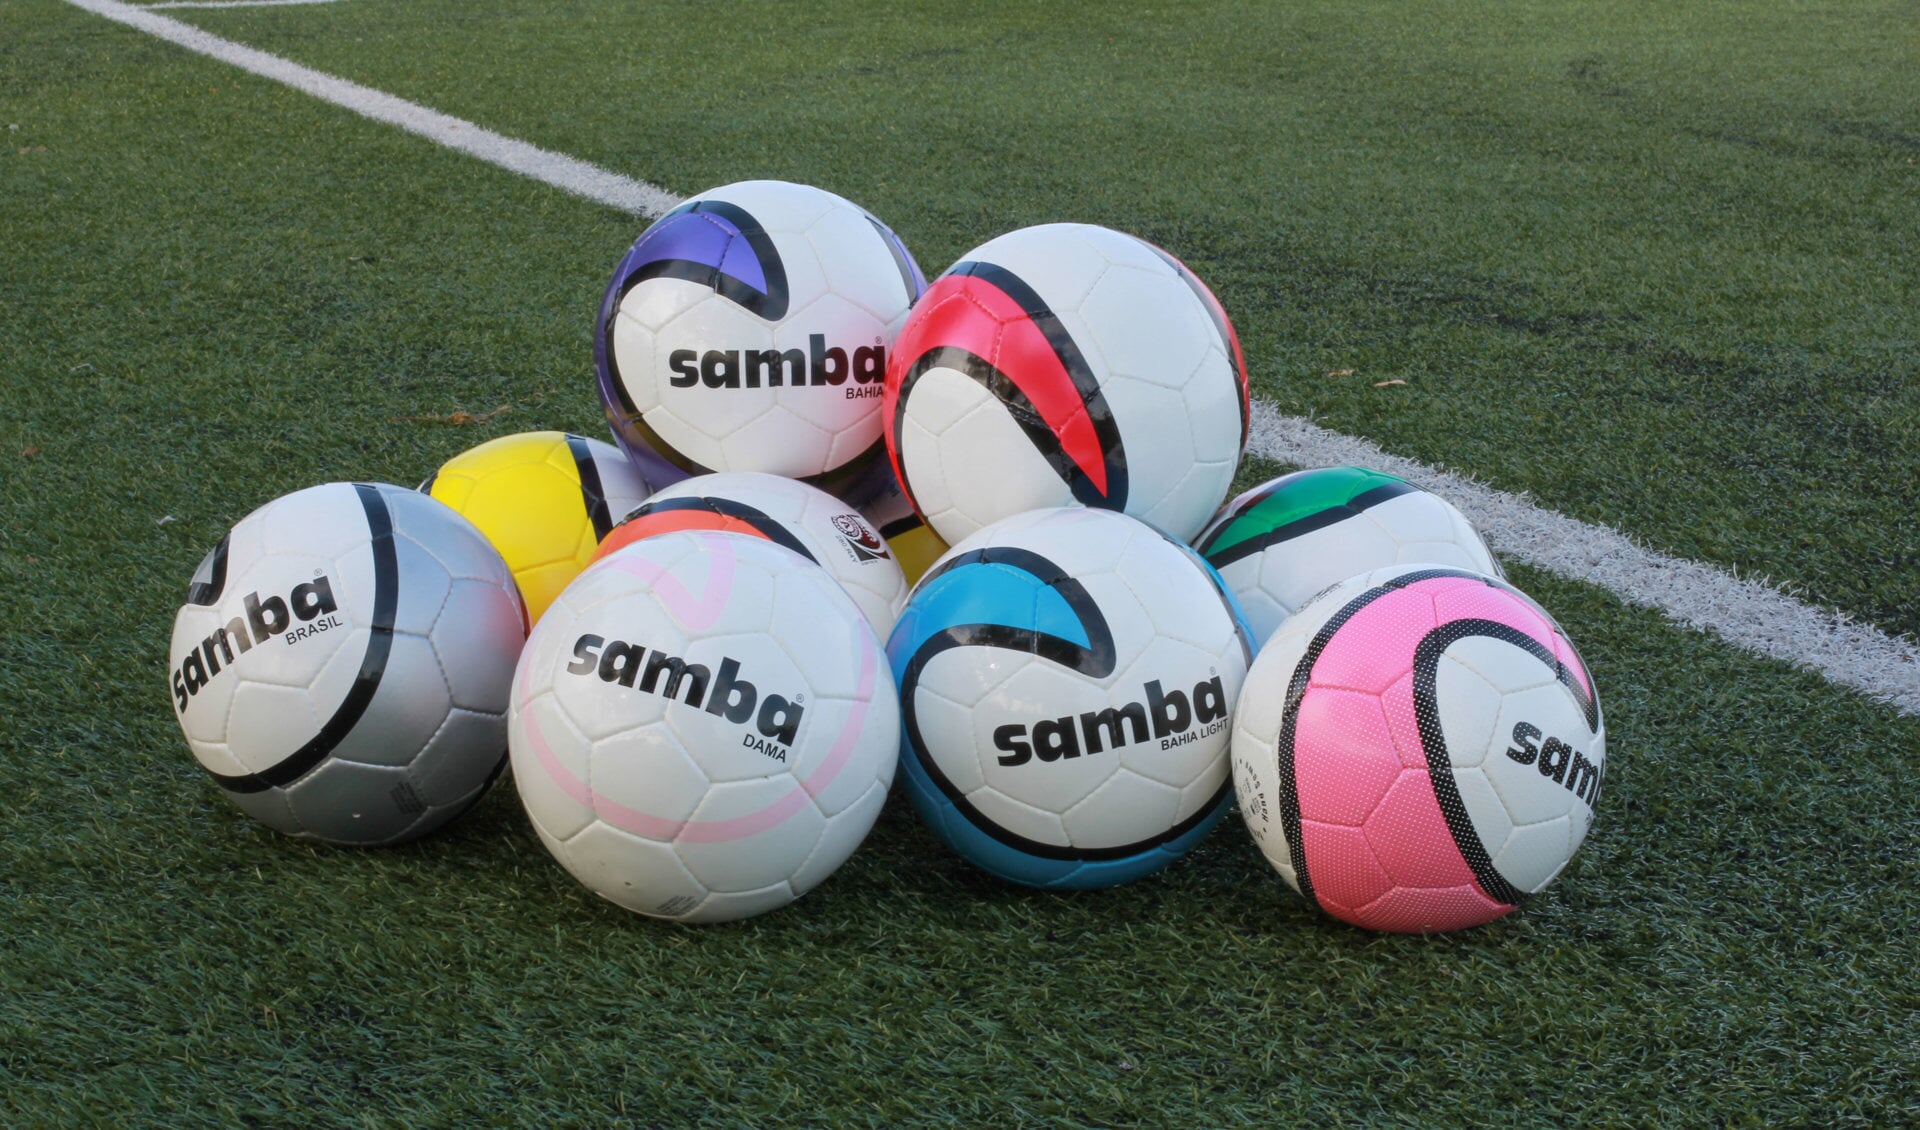 Samba Regio-Voetbal Toto van week 38-2016 staat klaar